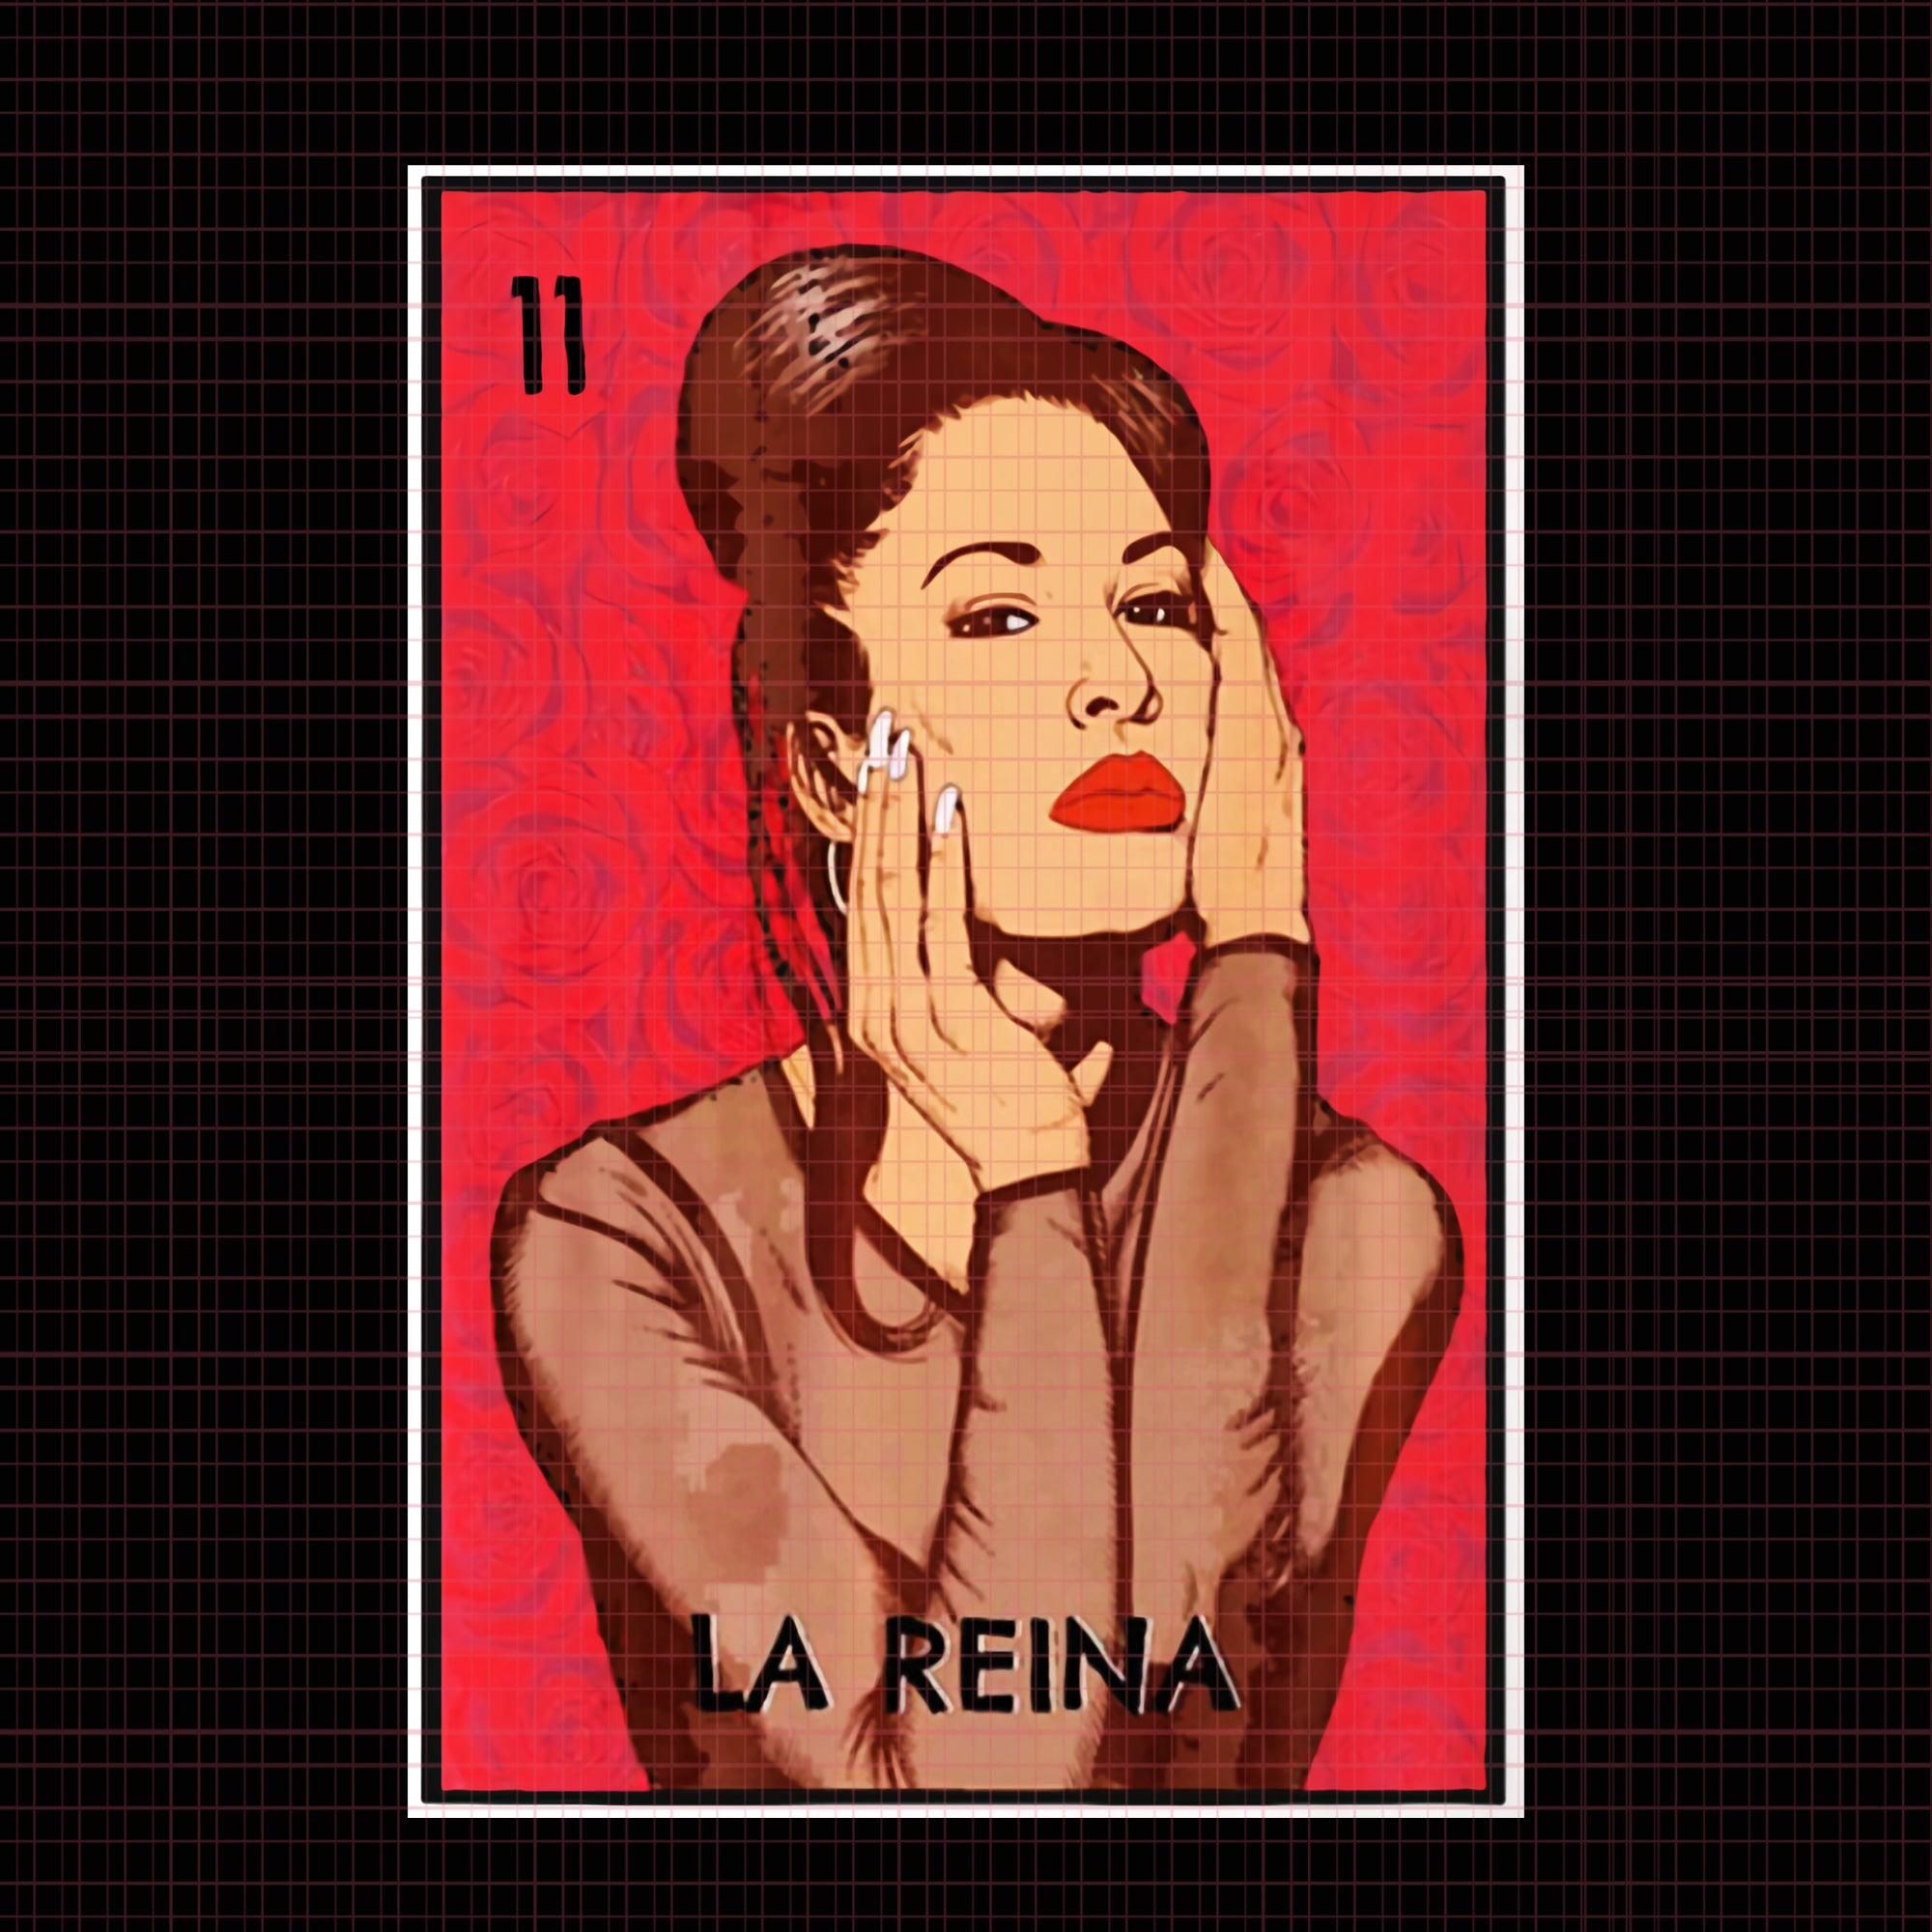 La Reina Selena Quintanilla png, La Reina Selena Quintanilla, La Reina Selena Quintanilla design, La Reina Selena Quintanilla vector